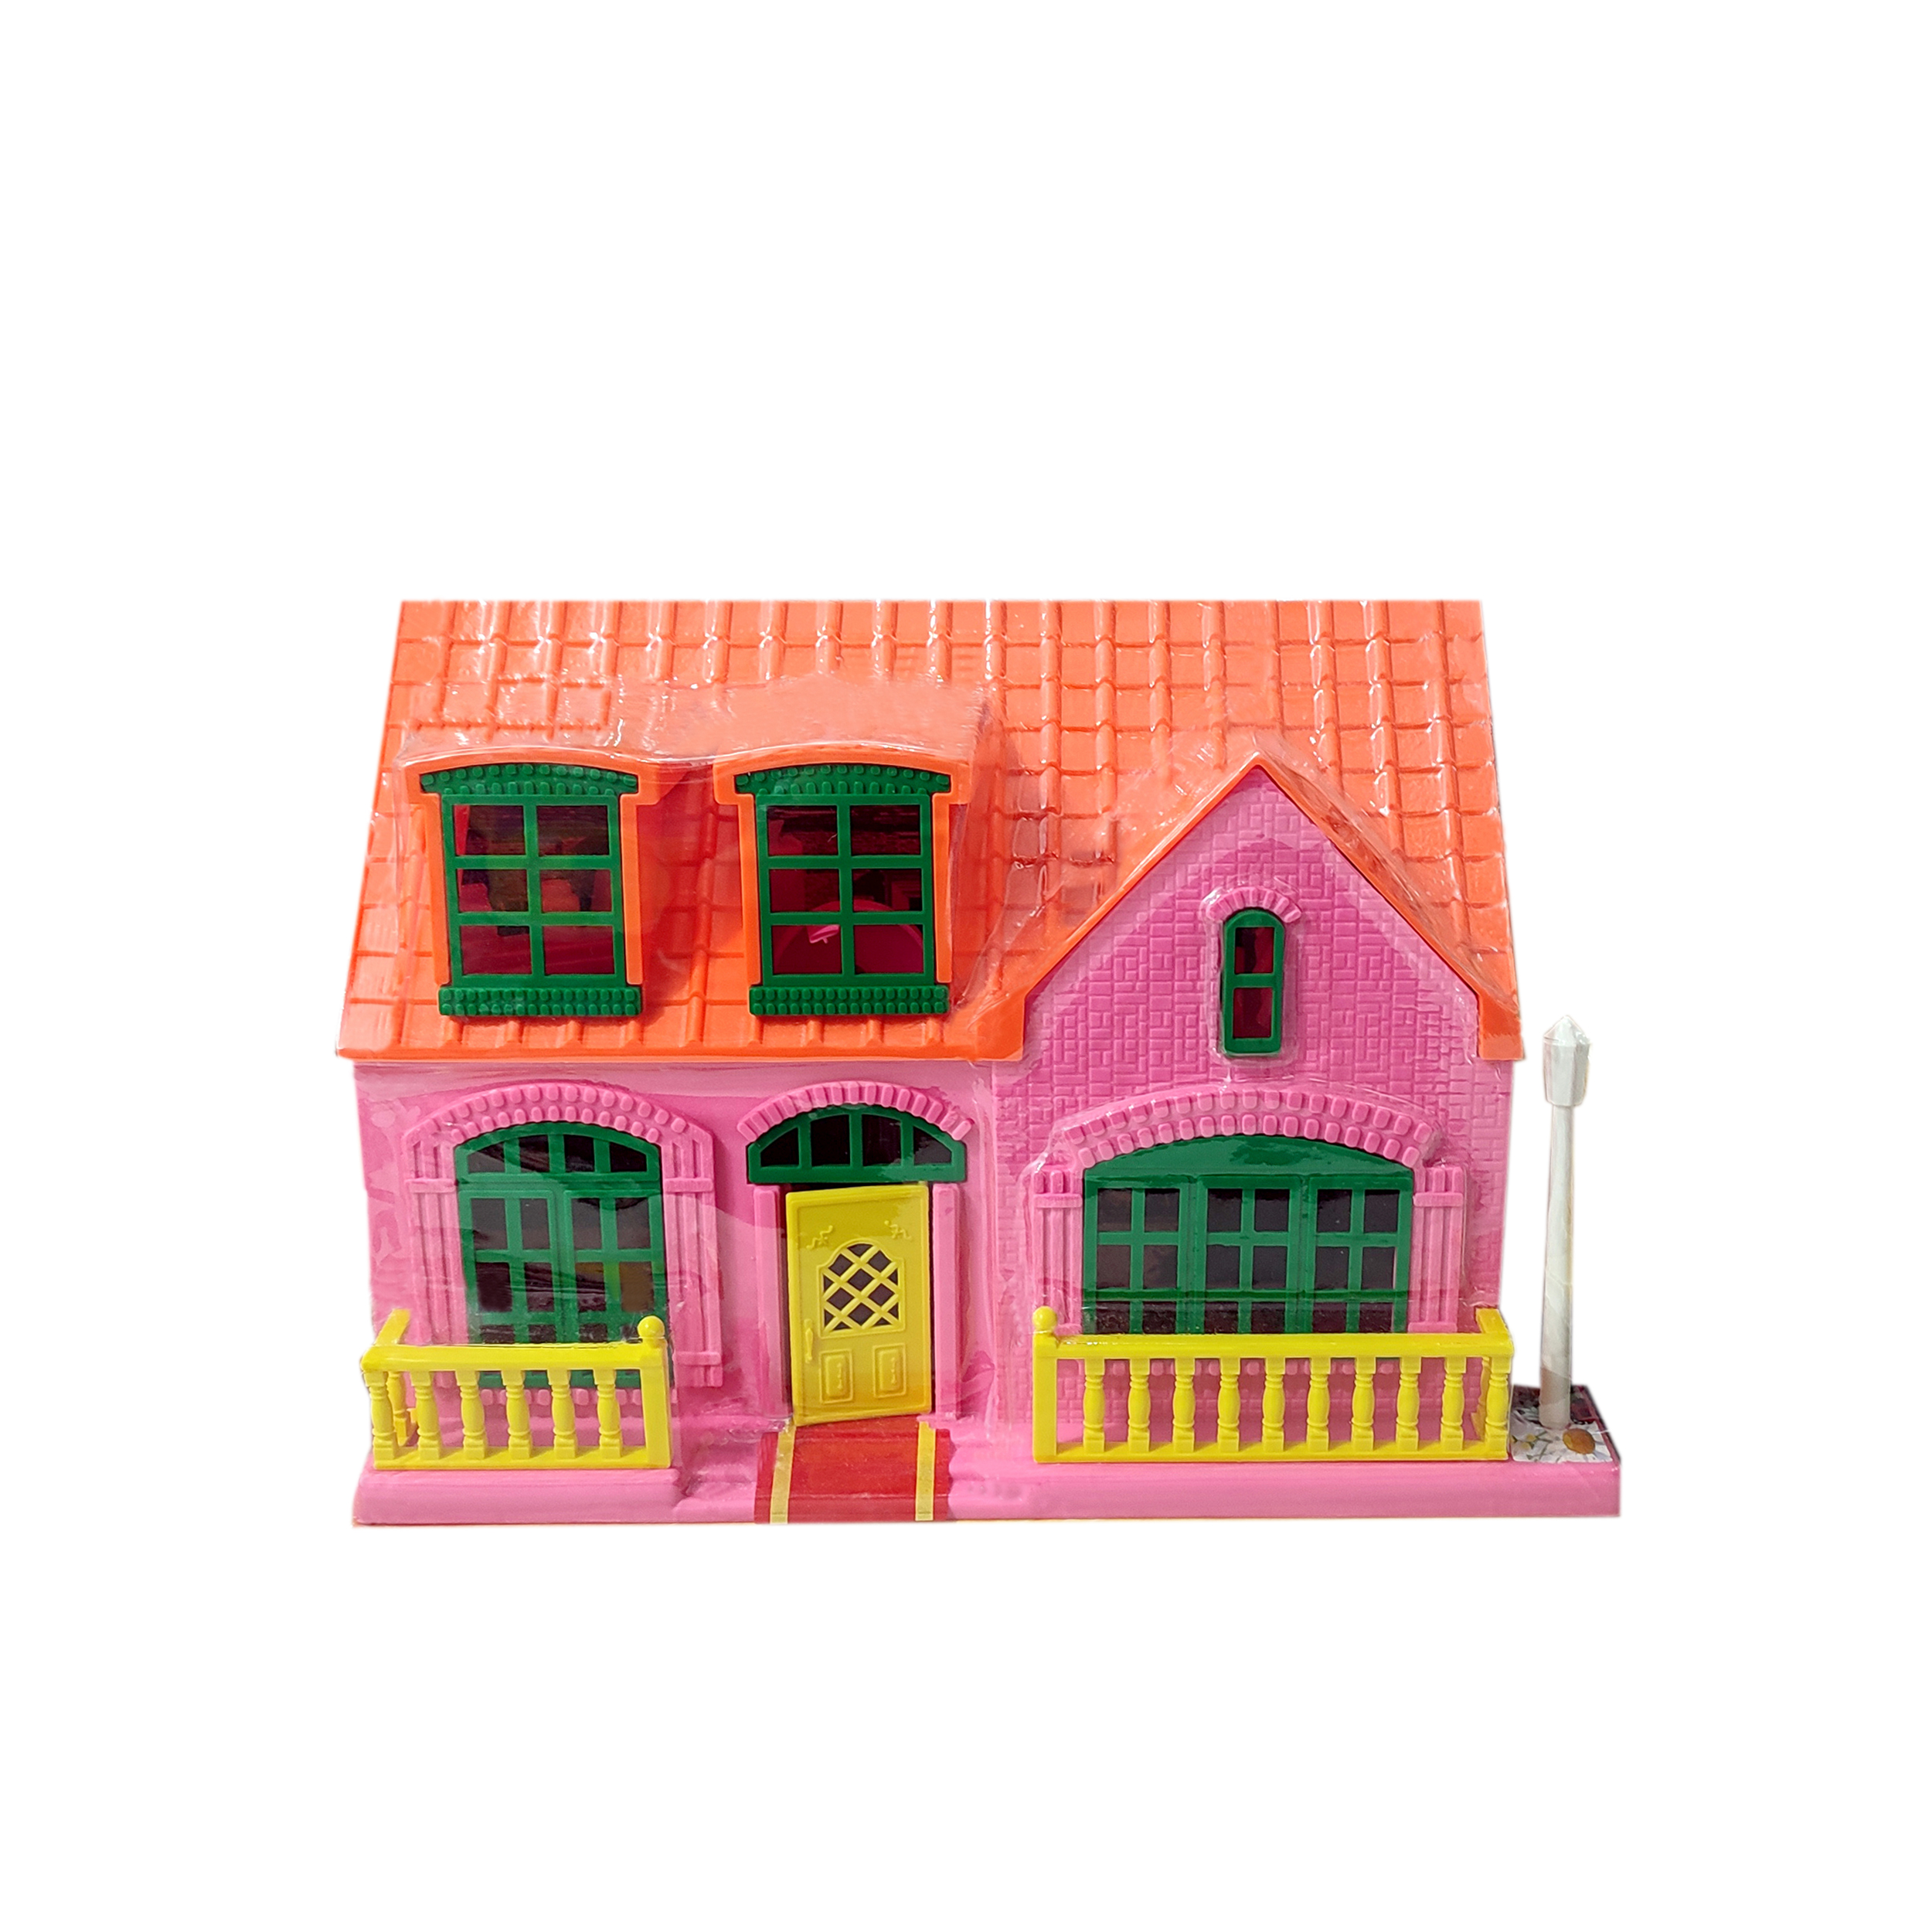  اسباب بازی مدل خانه عروسکی کد 0058